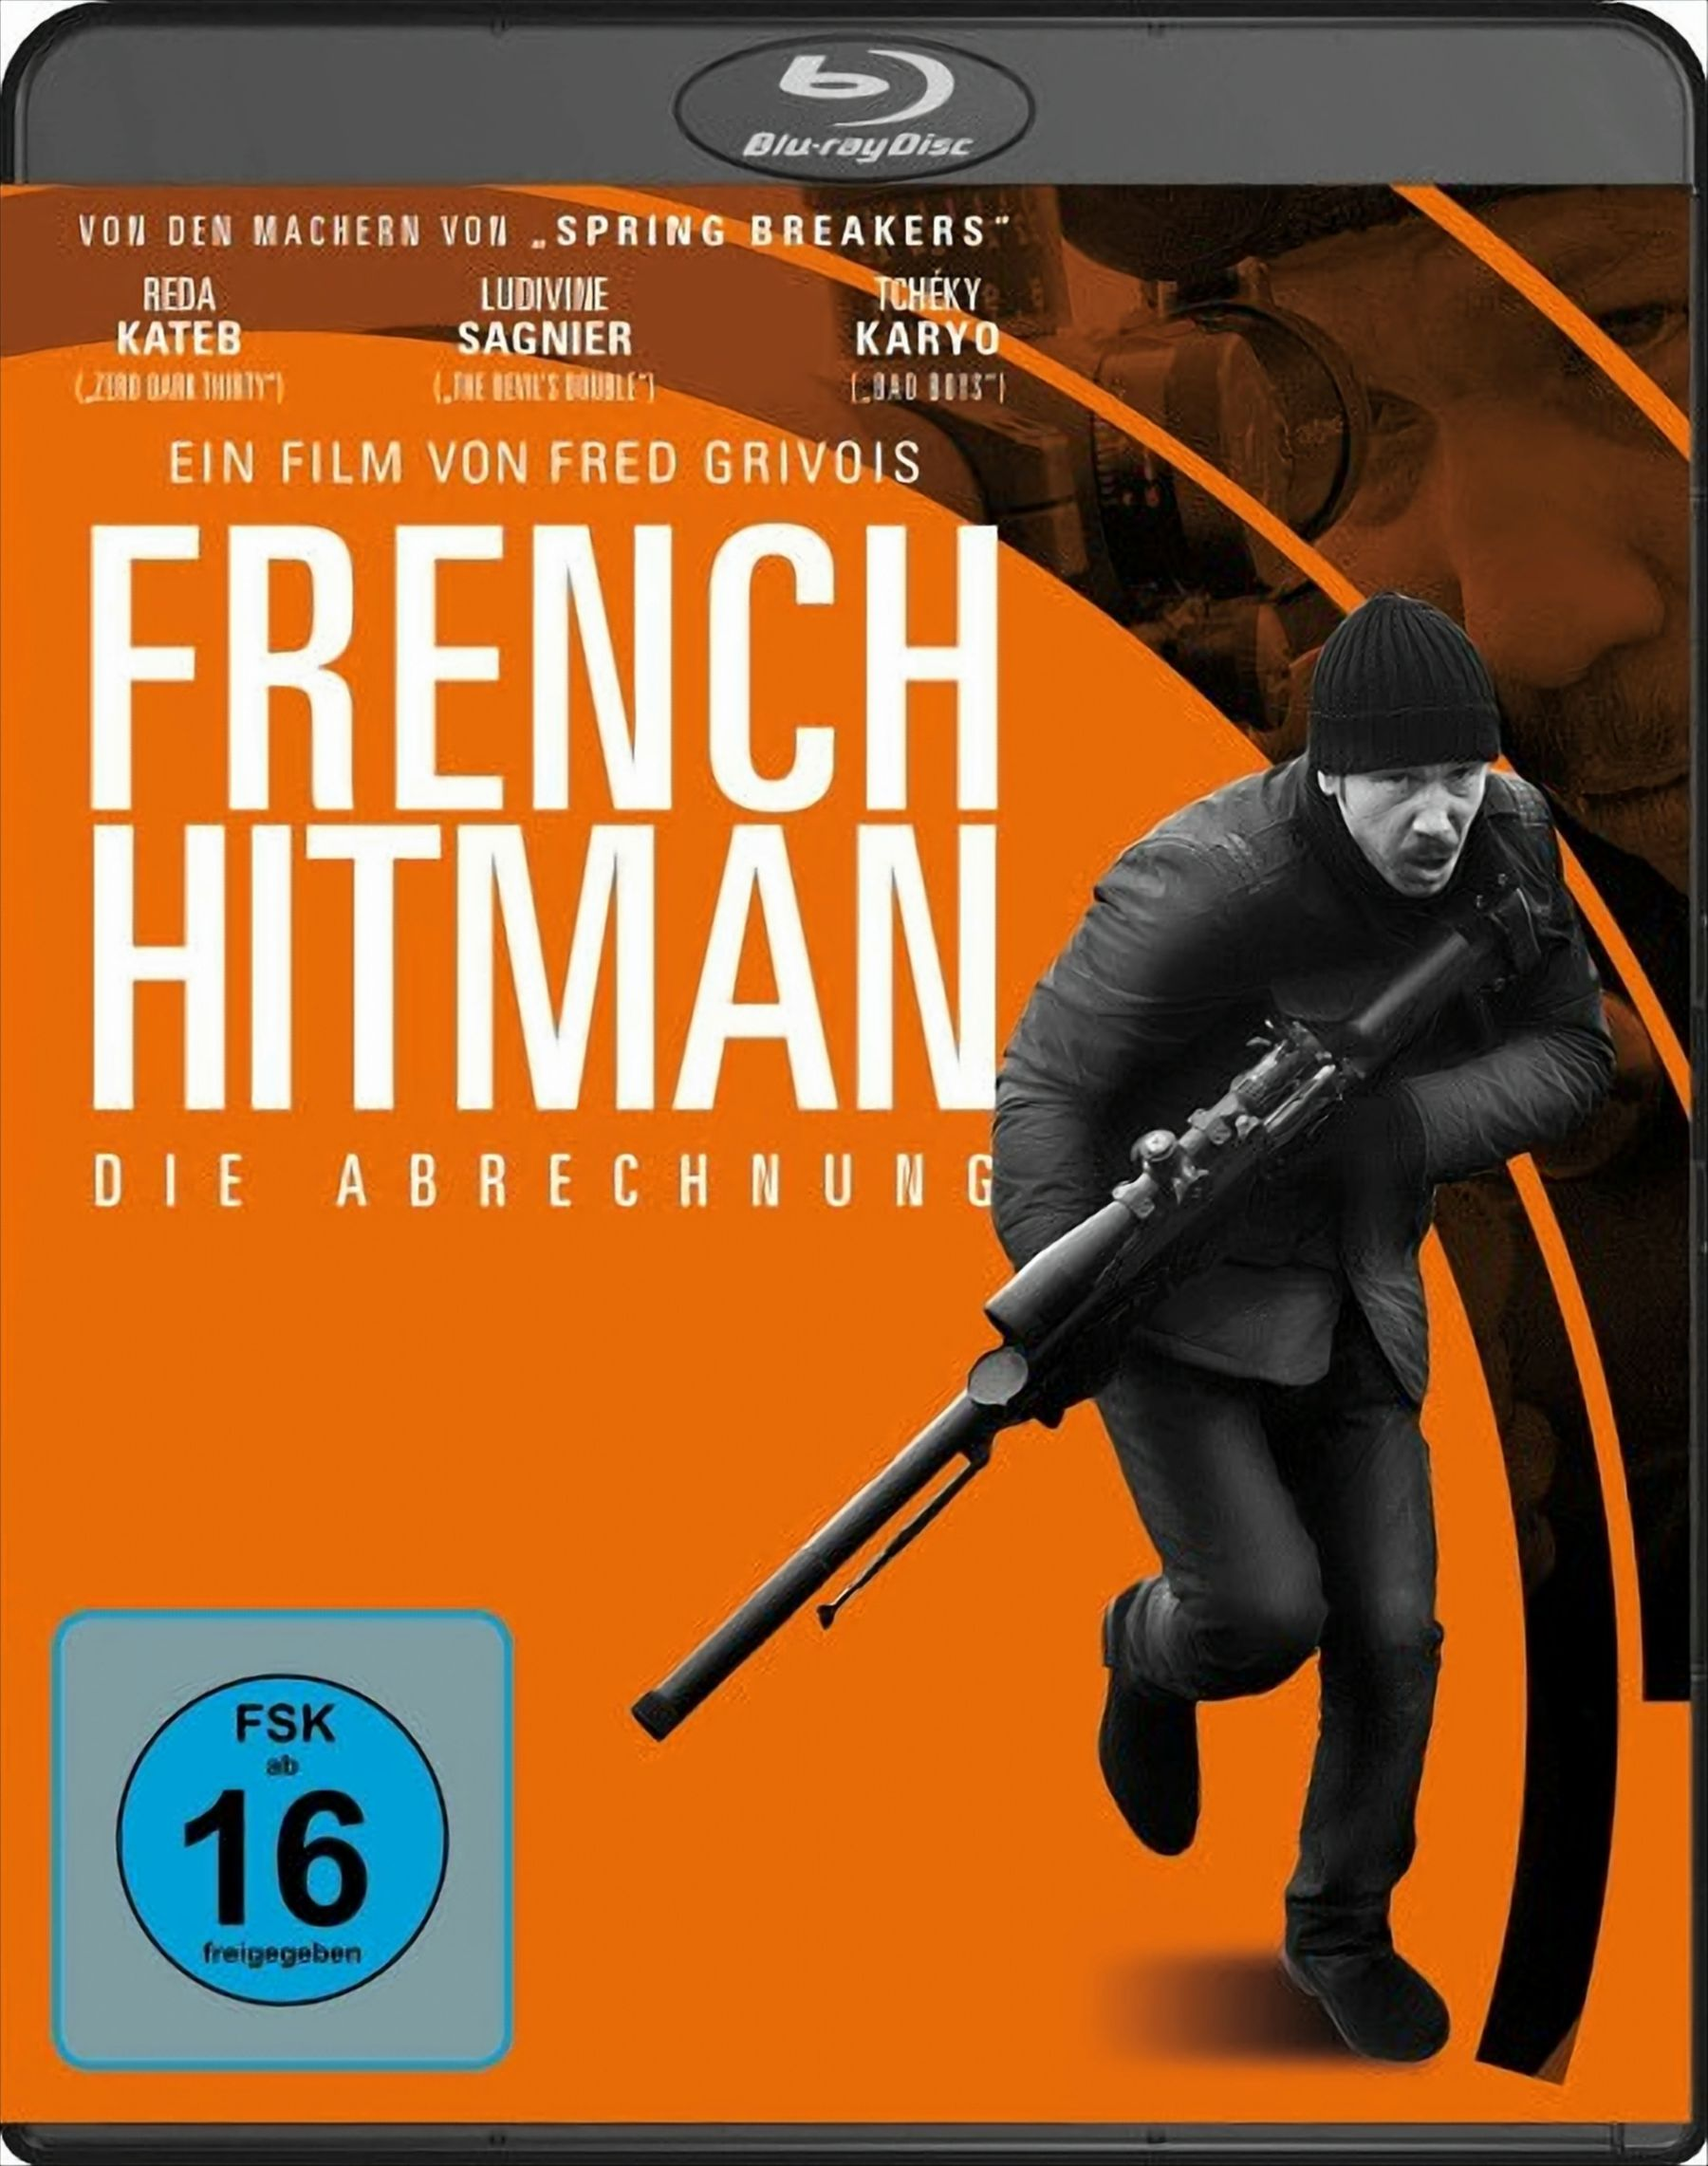 Abrechnung - French (Blu-ray) Die Hitman Blu-ray